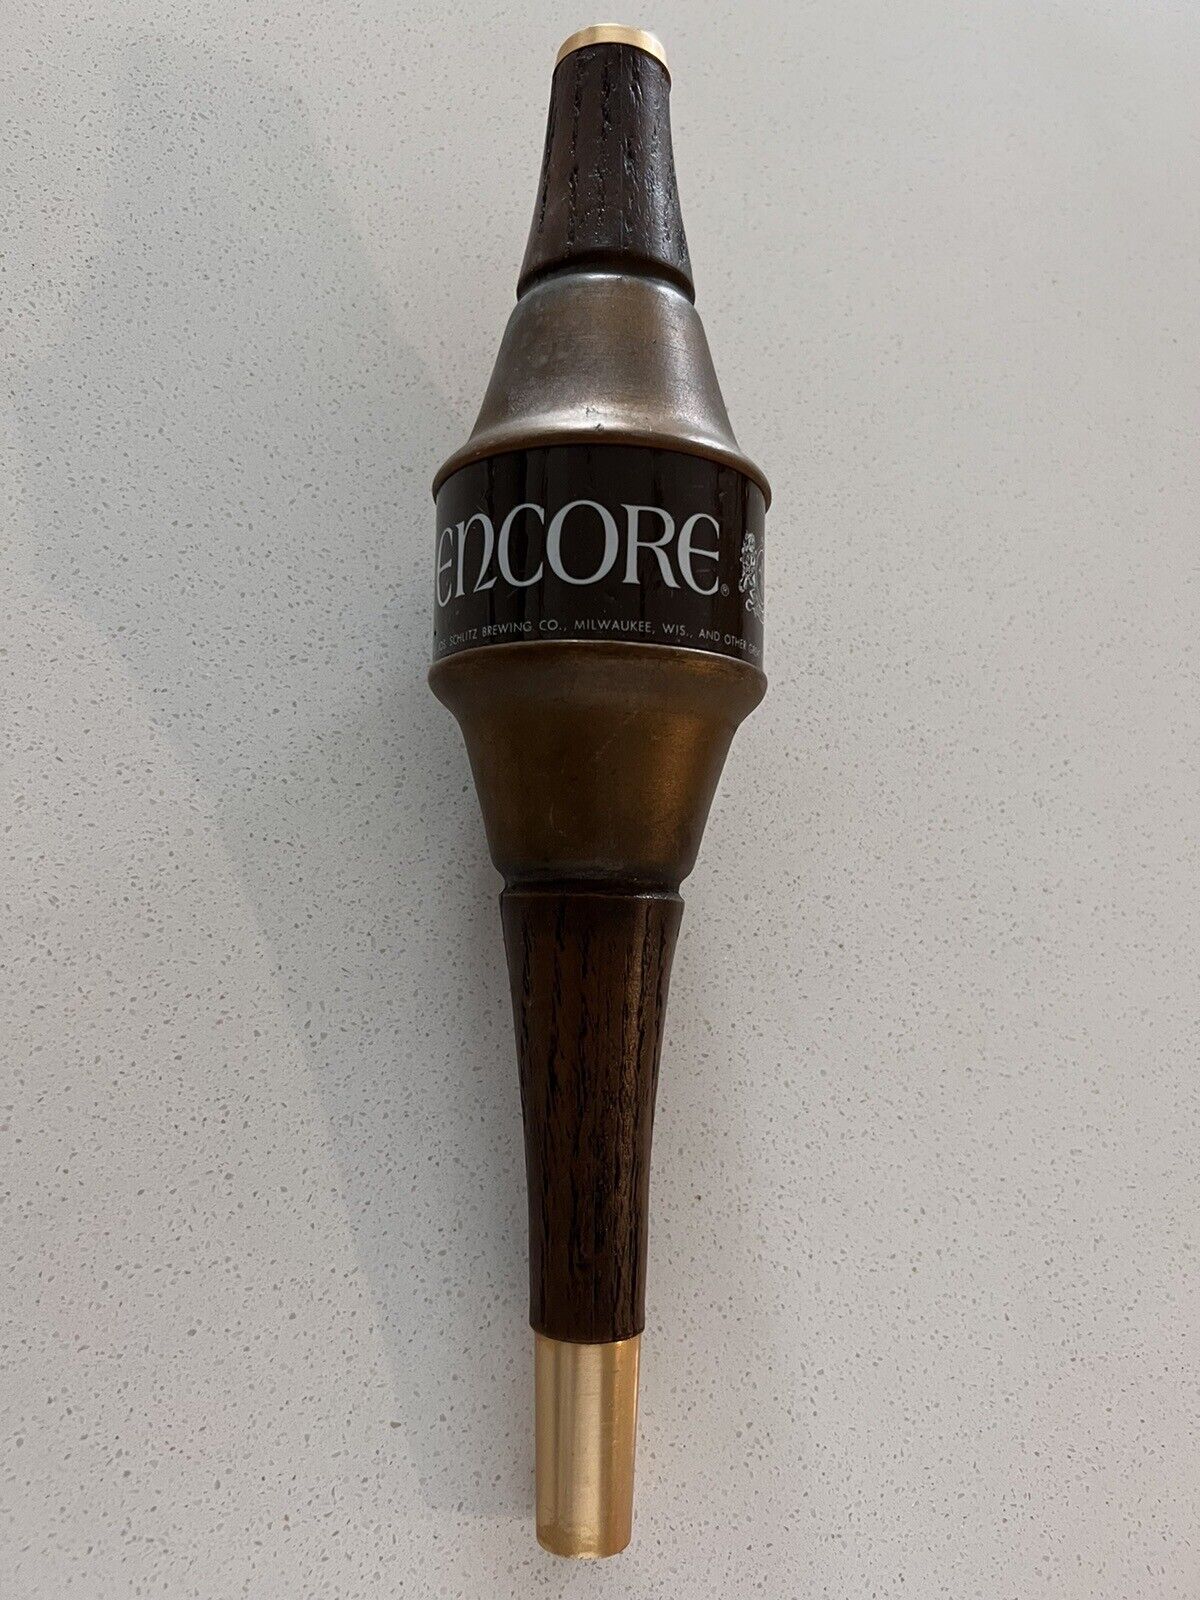 Vintage Encore Brewing Beer Tap Handle Knob 11” Pub Bar Round Schlitz